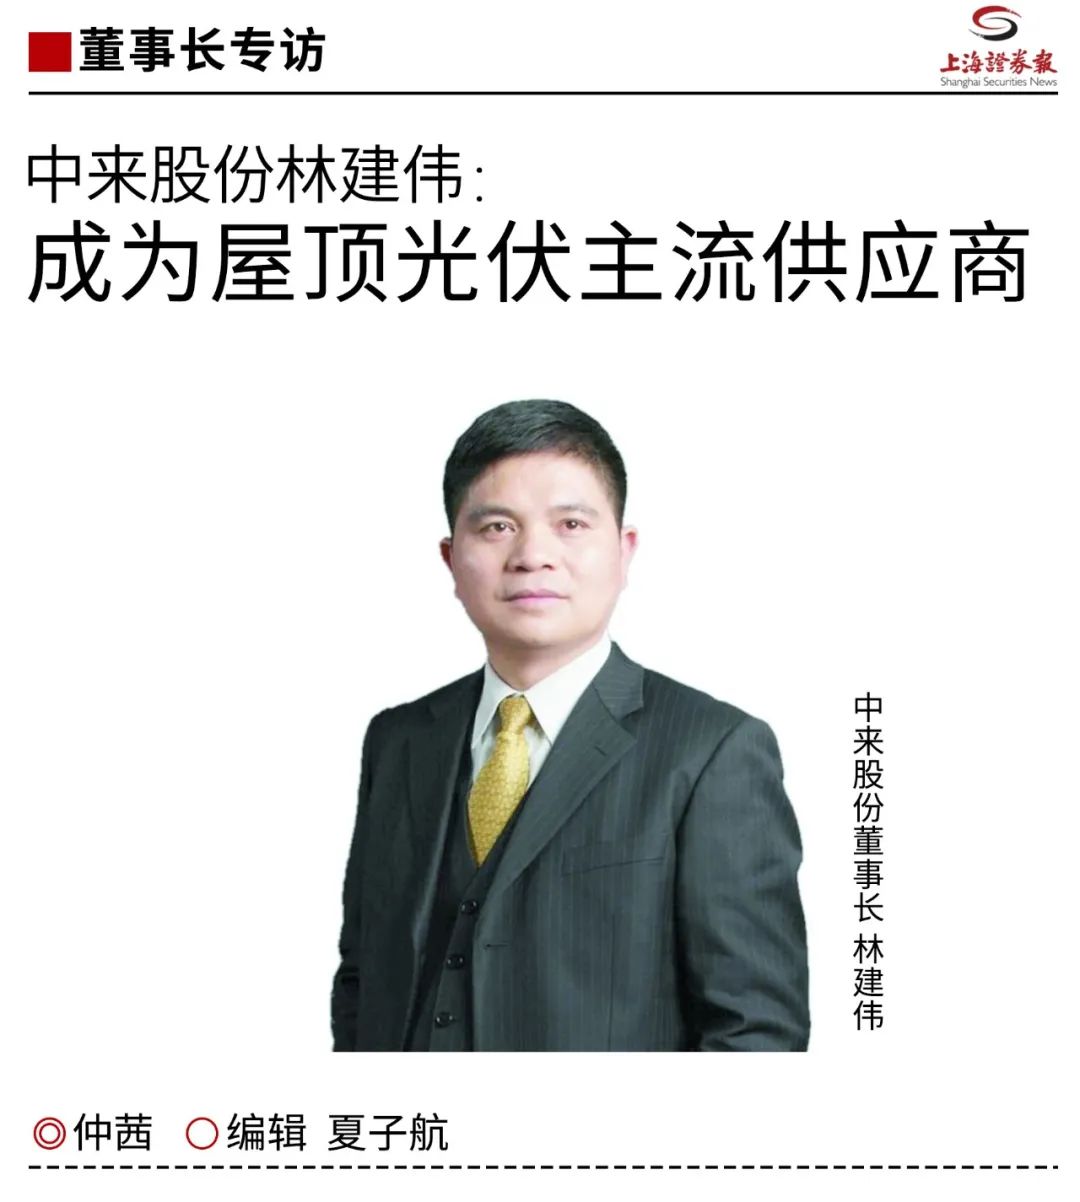 上海证券报专访林建伟：成为屋顶光伏主流供应商